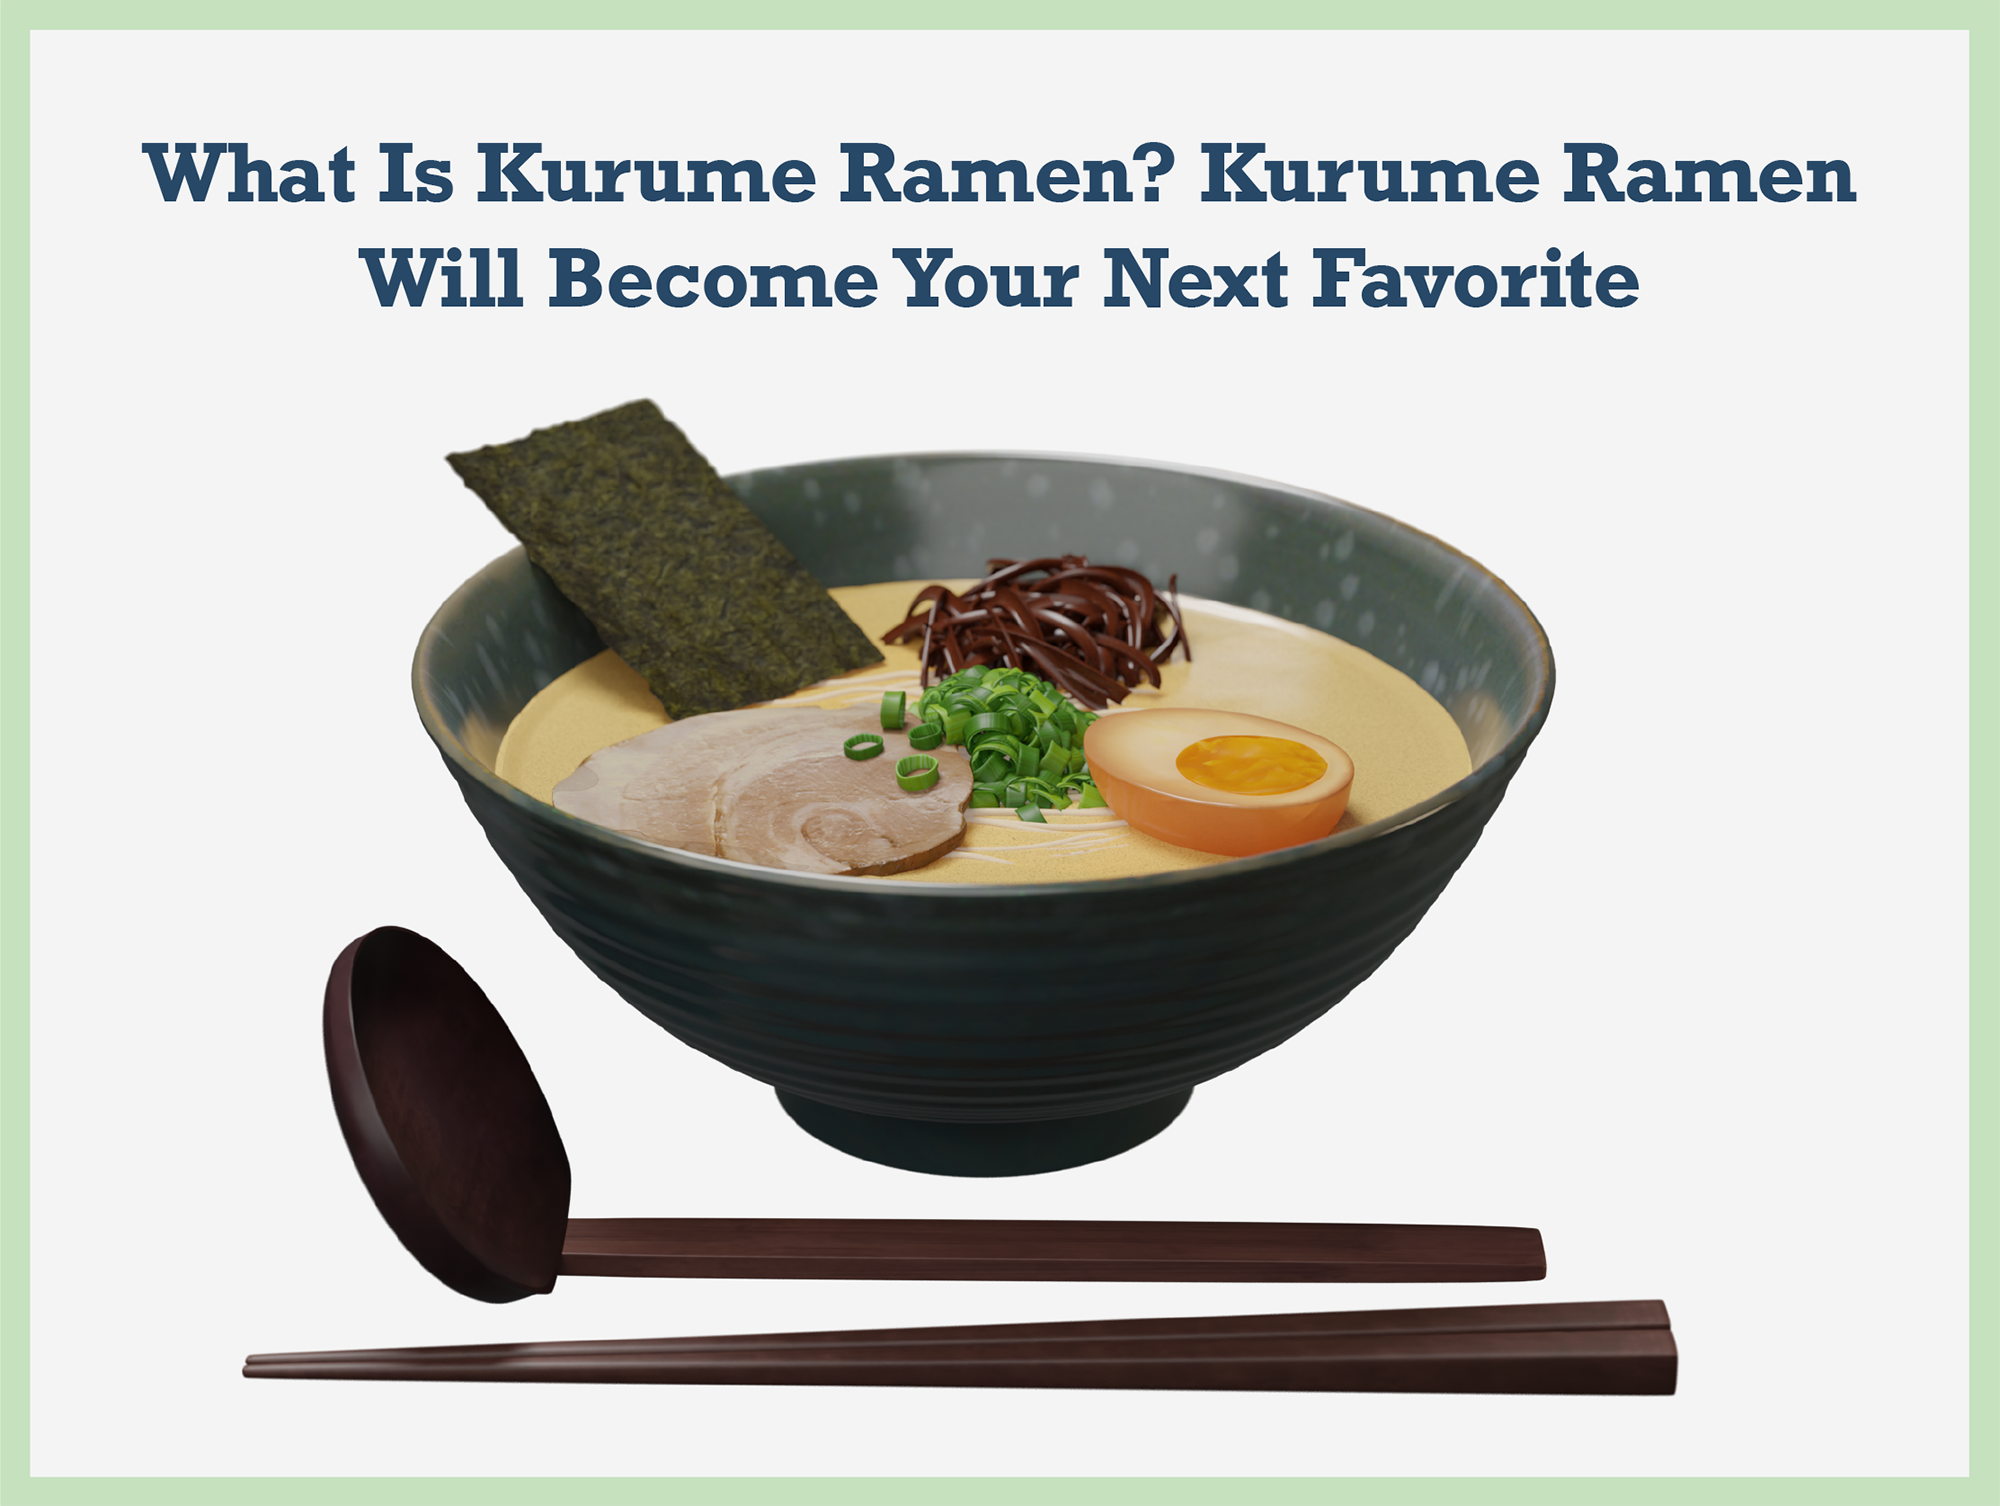 What Is Kurume Ramen? Kurume Ramen Will Become Your Next Favorite